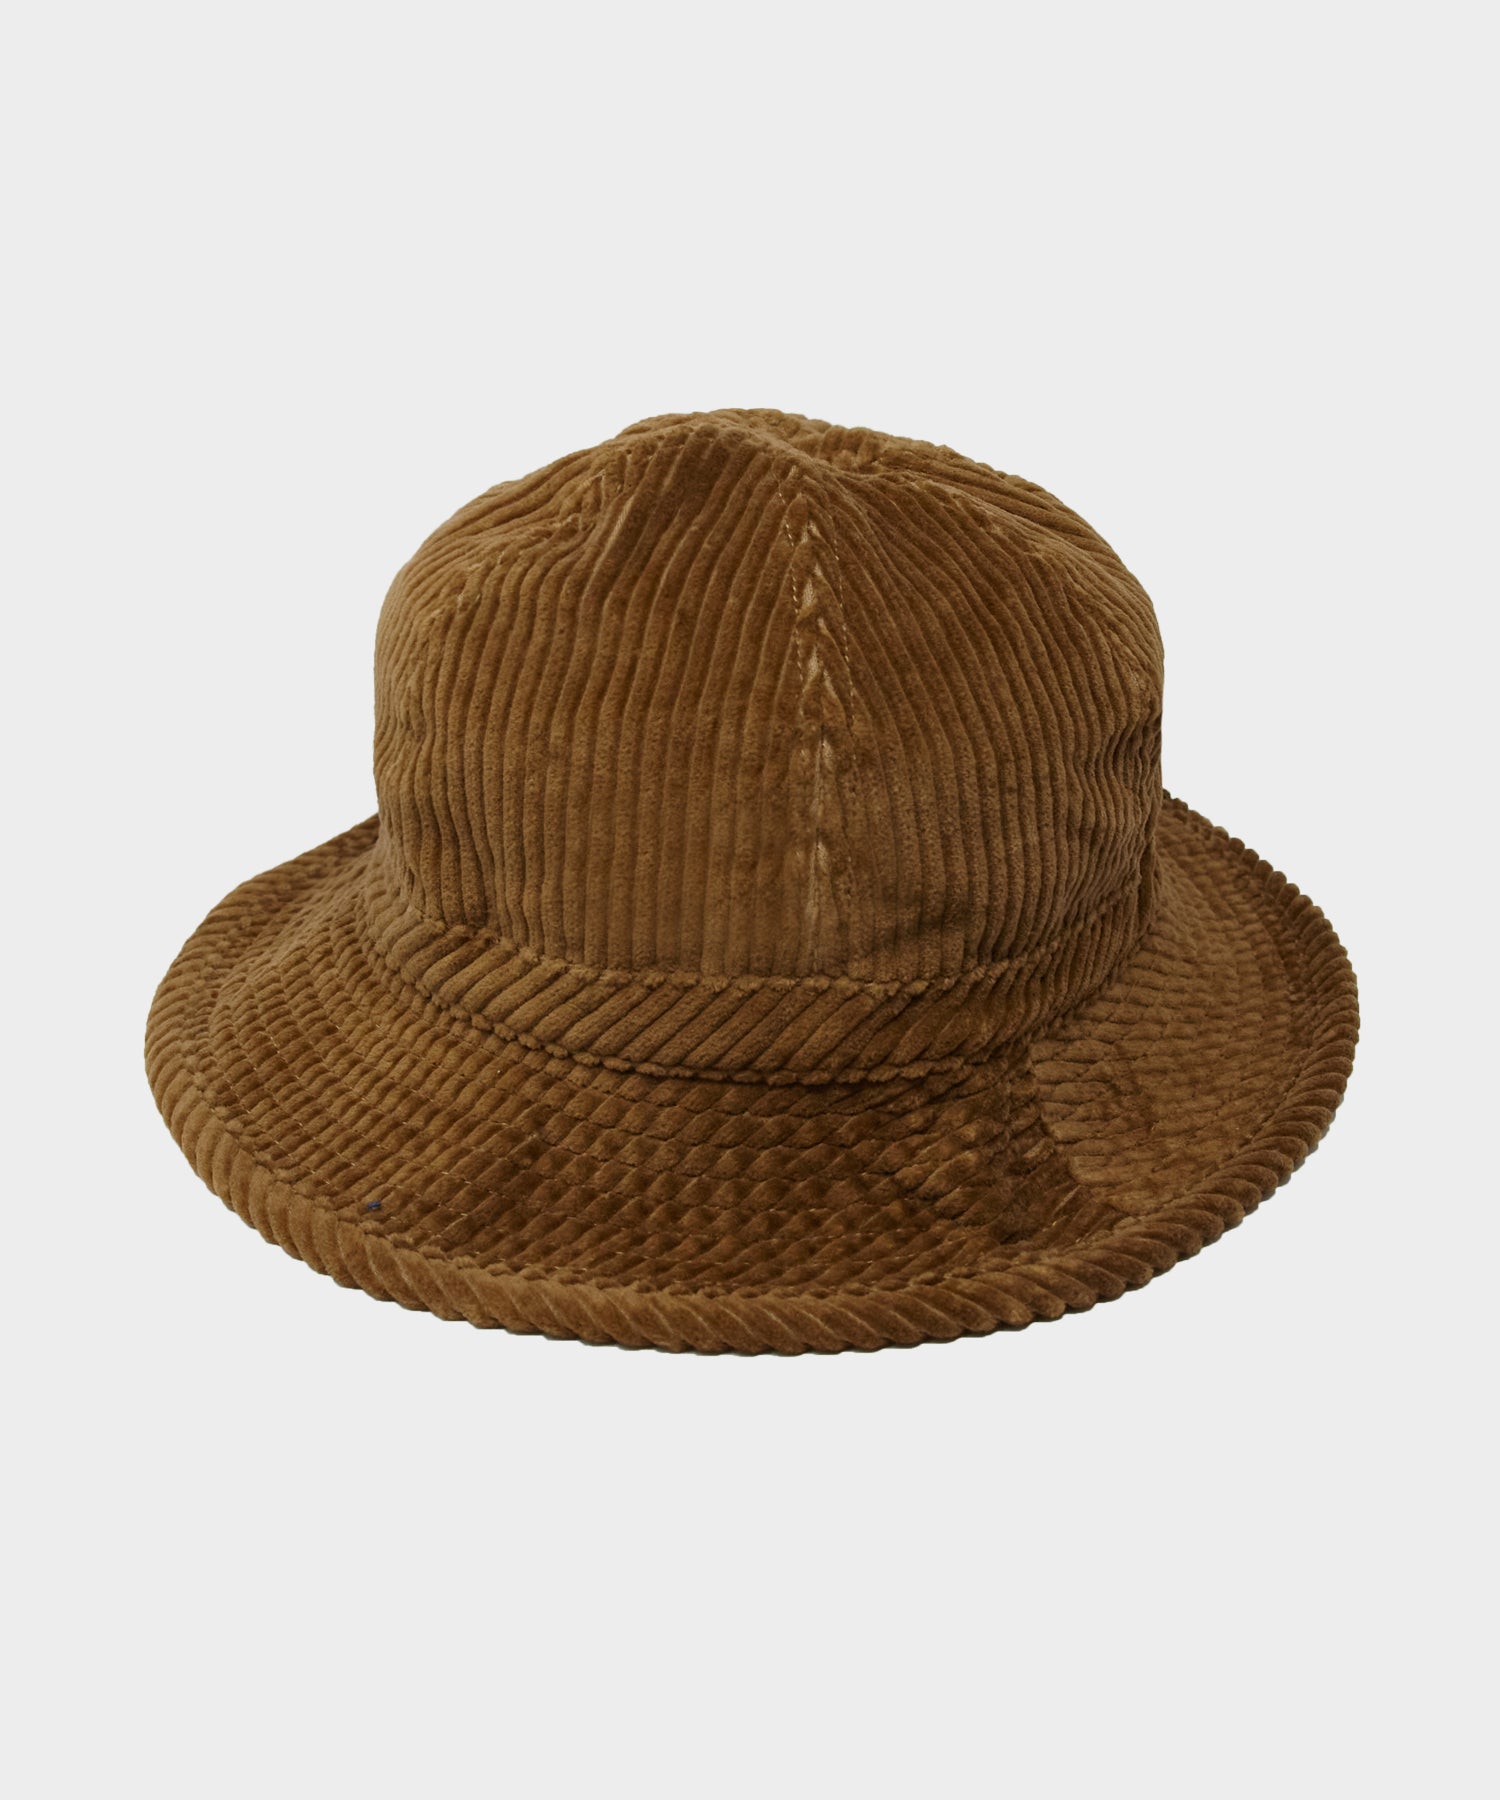 Câbleami Japanese 5-Wale Corduroy Bucket Hat in Tan